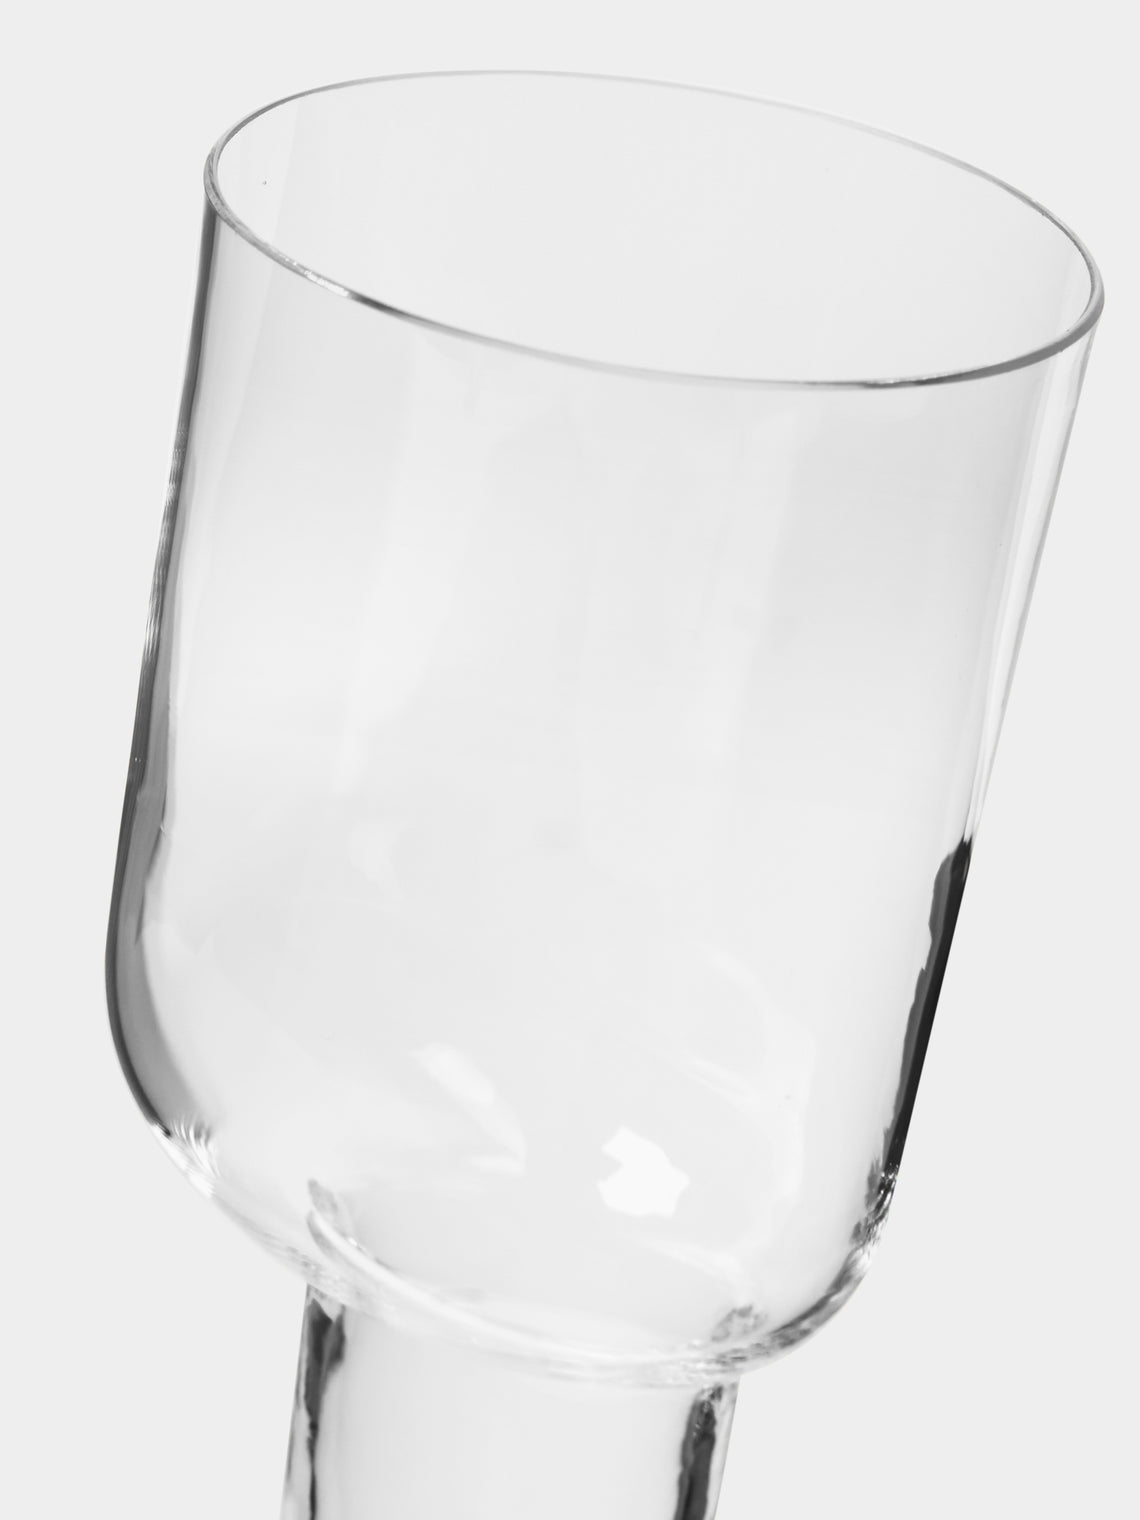 Carlo Moretti - Asymmetric Murano Wine Glass - ABASK